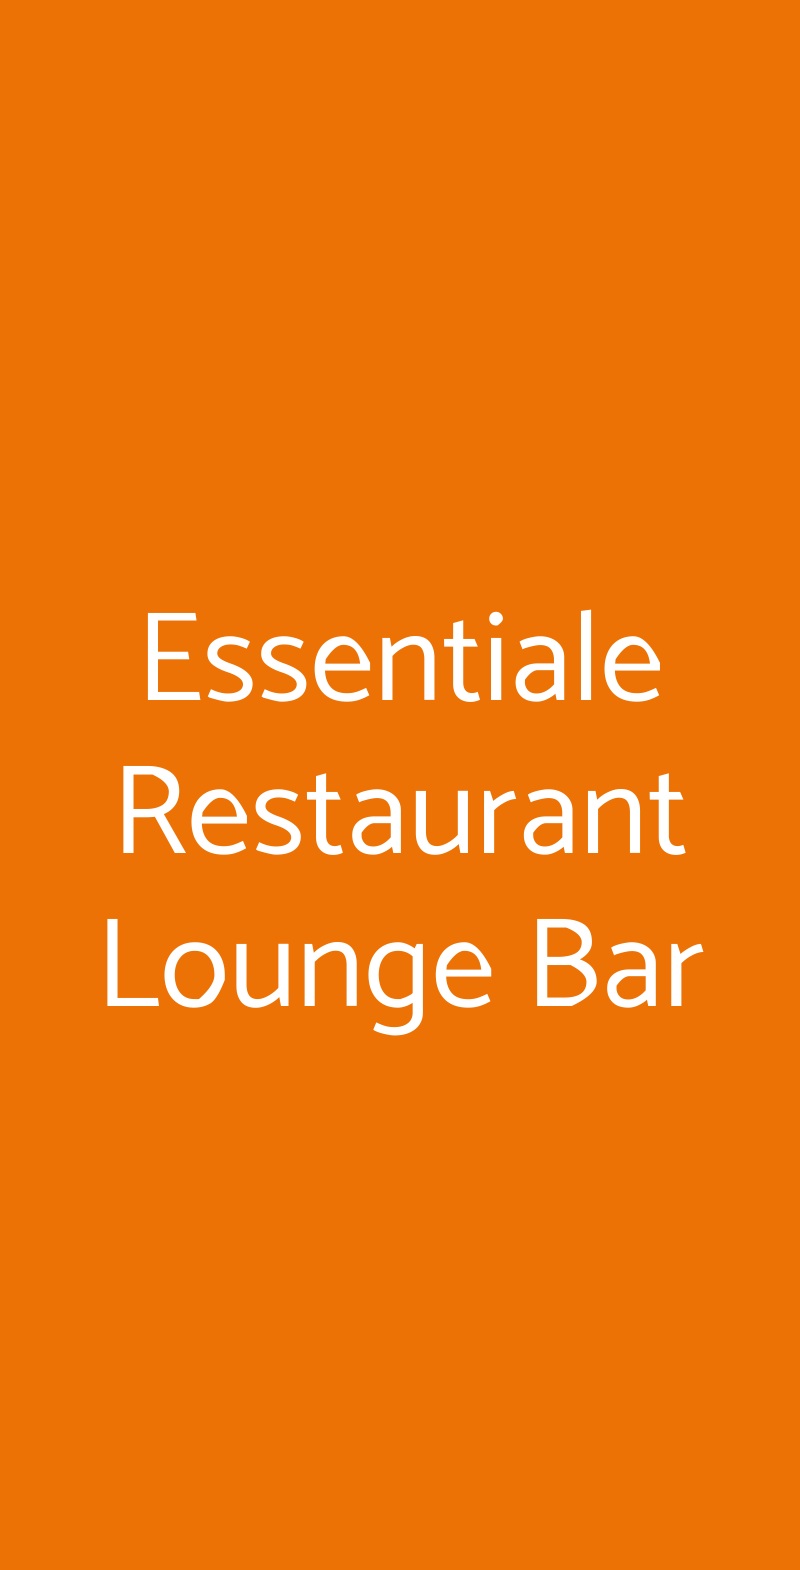 Essentiale Restaurant Lounge Bar Lido di Venezia menù 1 pagina